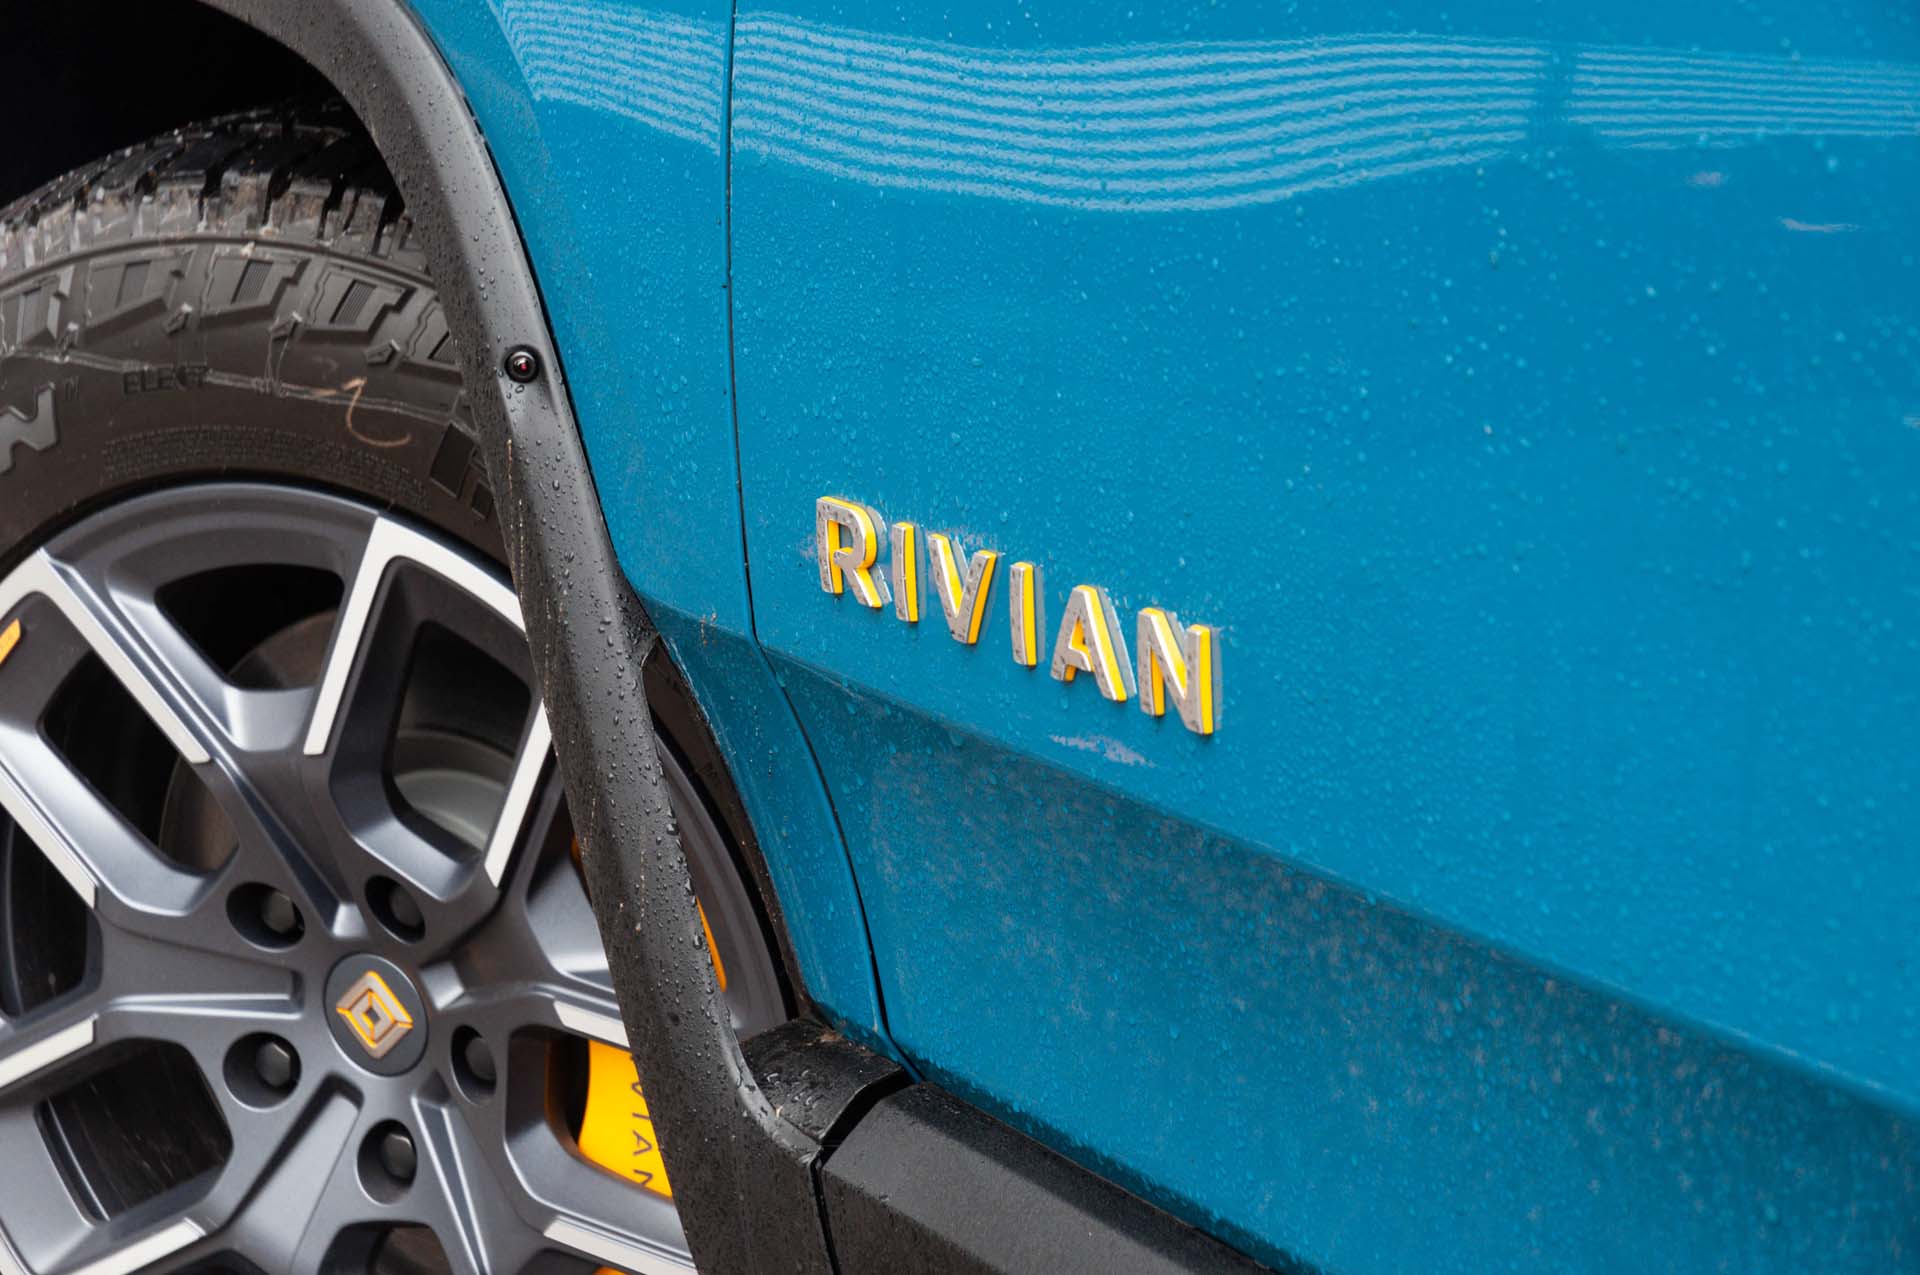 Rivian rétablit les prix d'origine pour les réservations R1T et R1S, après de nombreuses réactions.